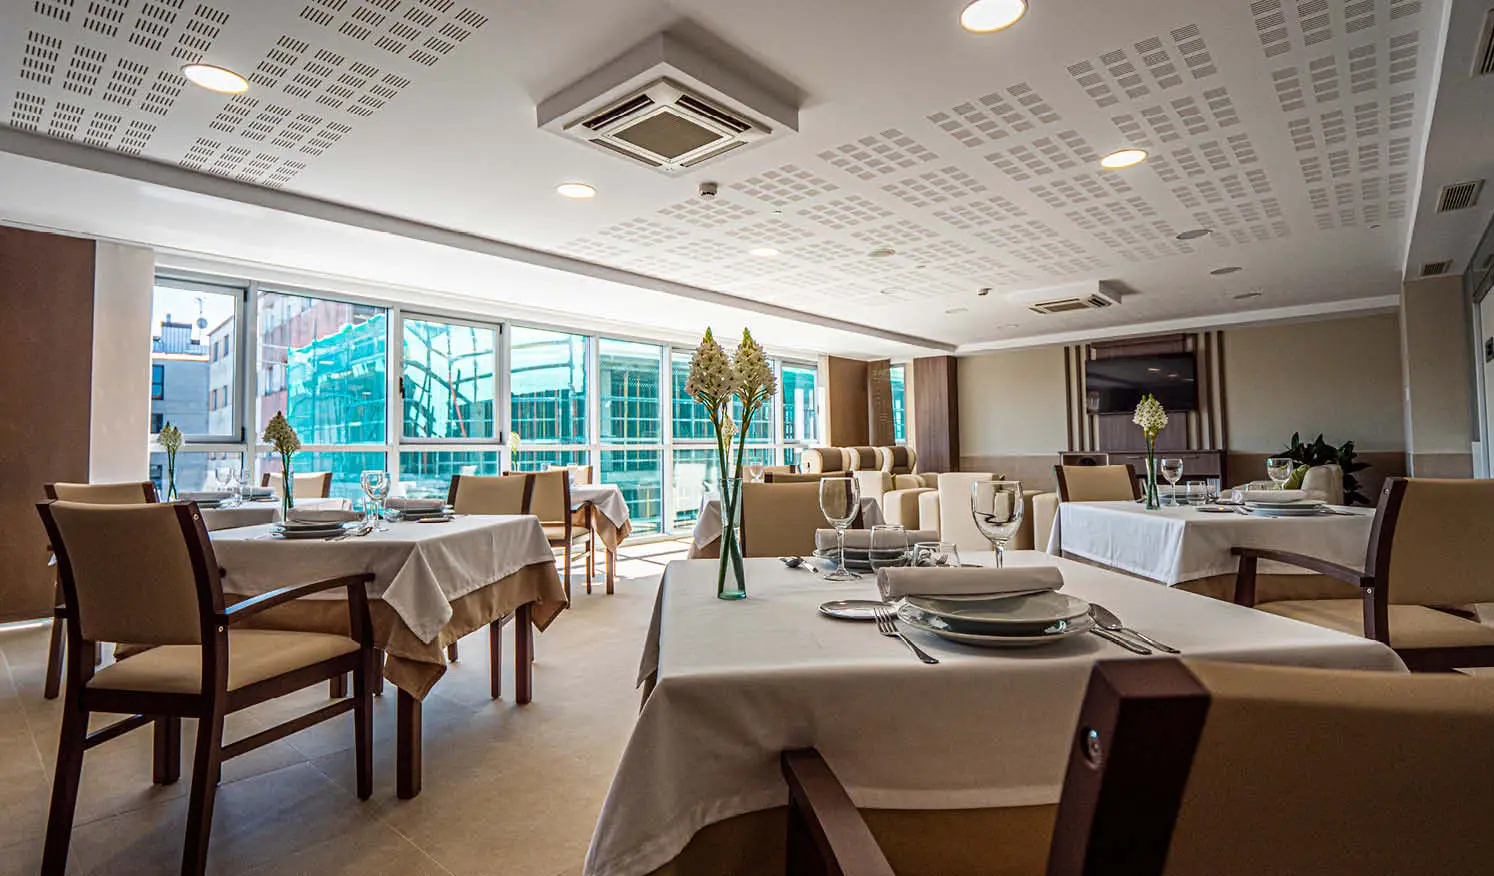 Cafeteria y comedor con tonos beiges e iluminacion natural con cristalera, mesas y sillas